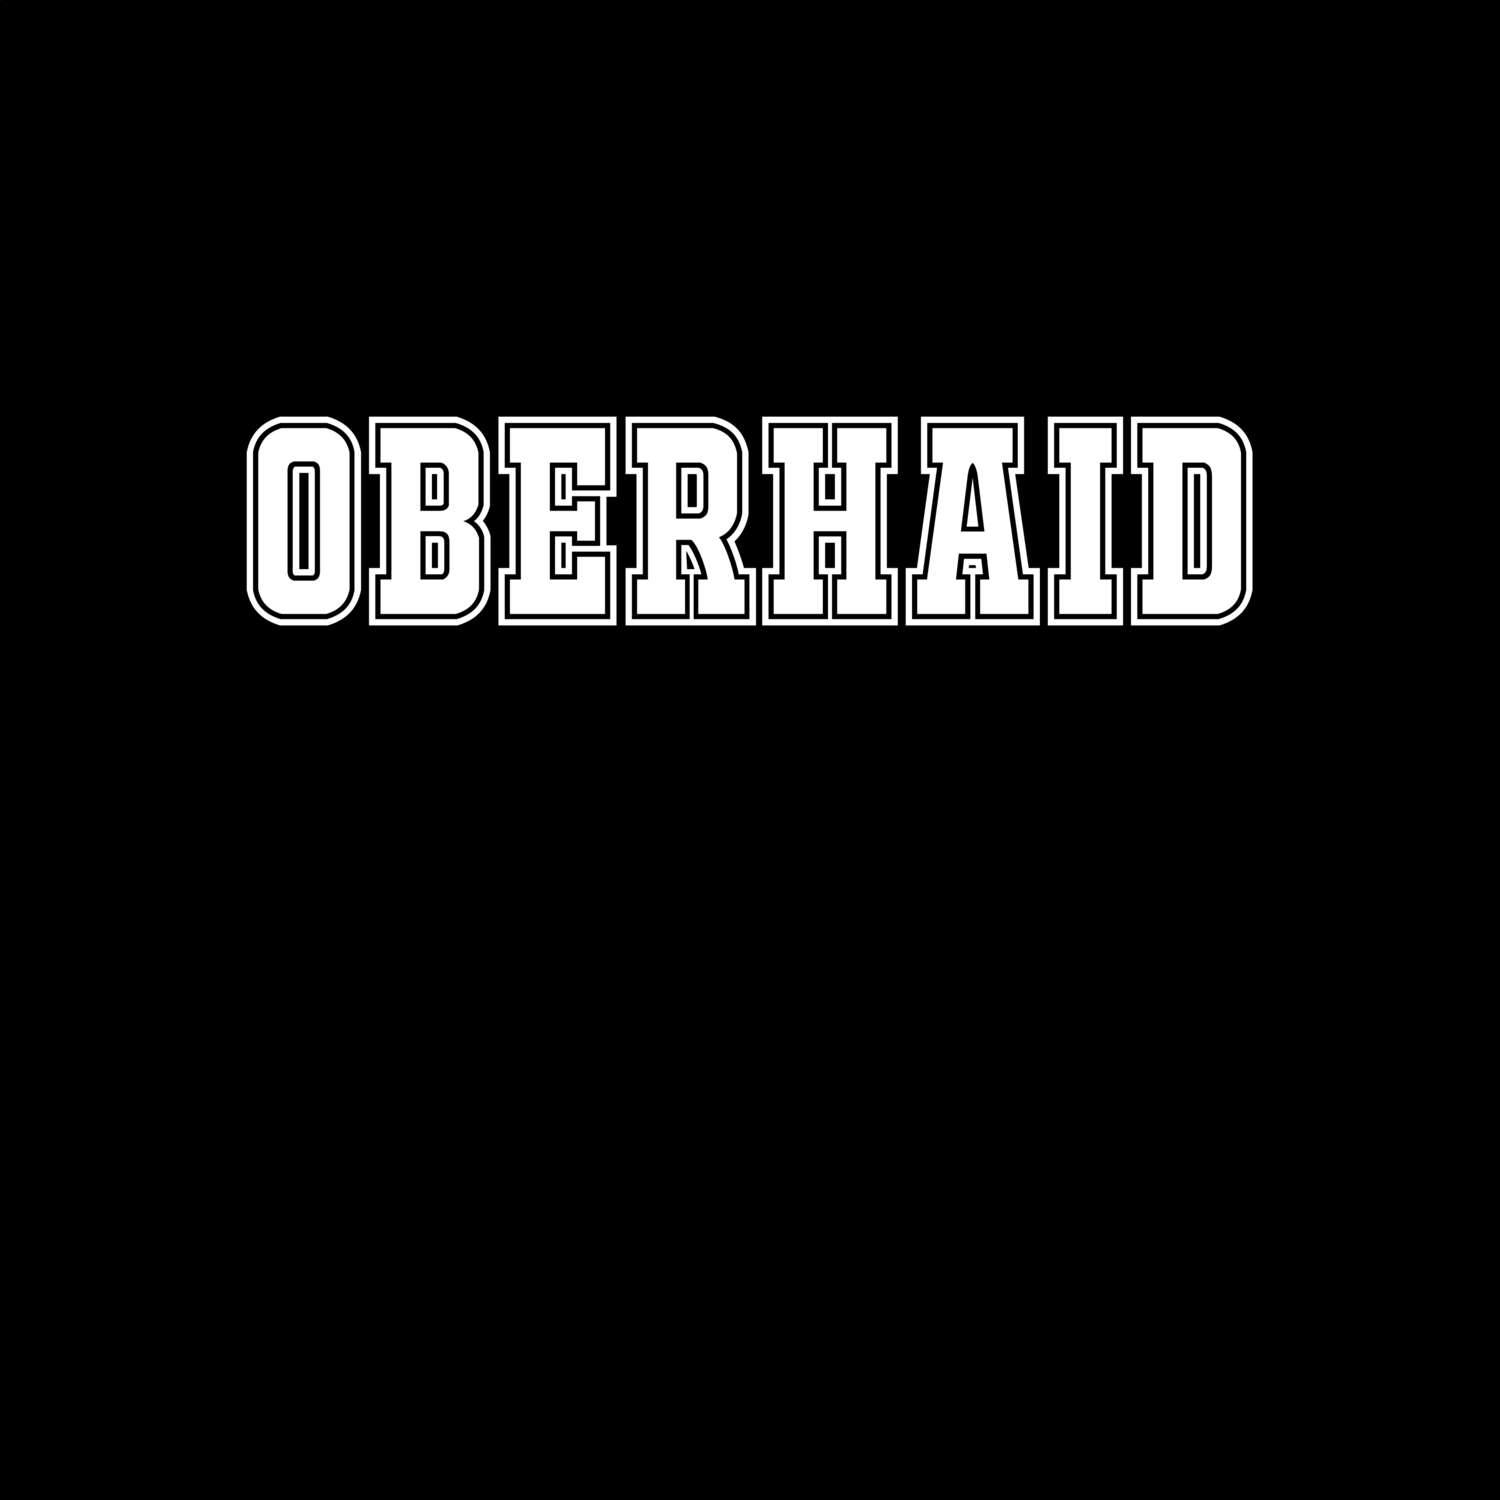 Oberhaid T-Shirt »Classic«